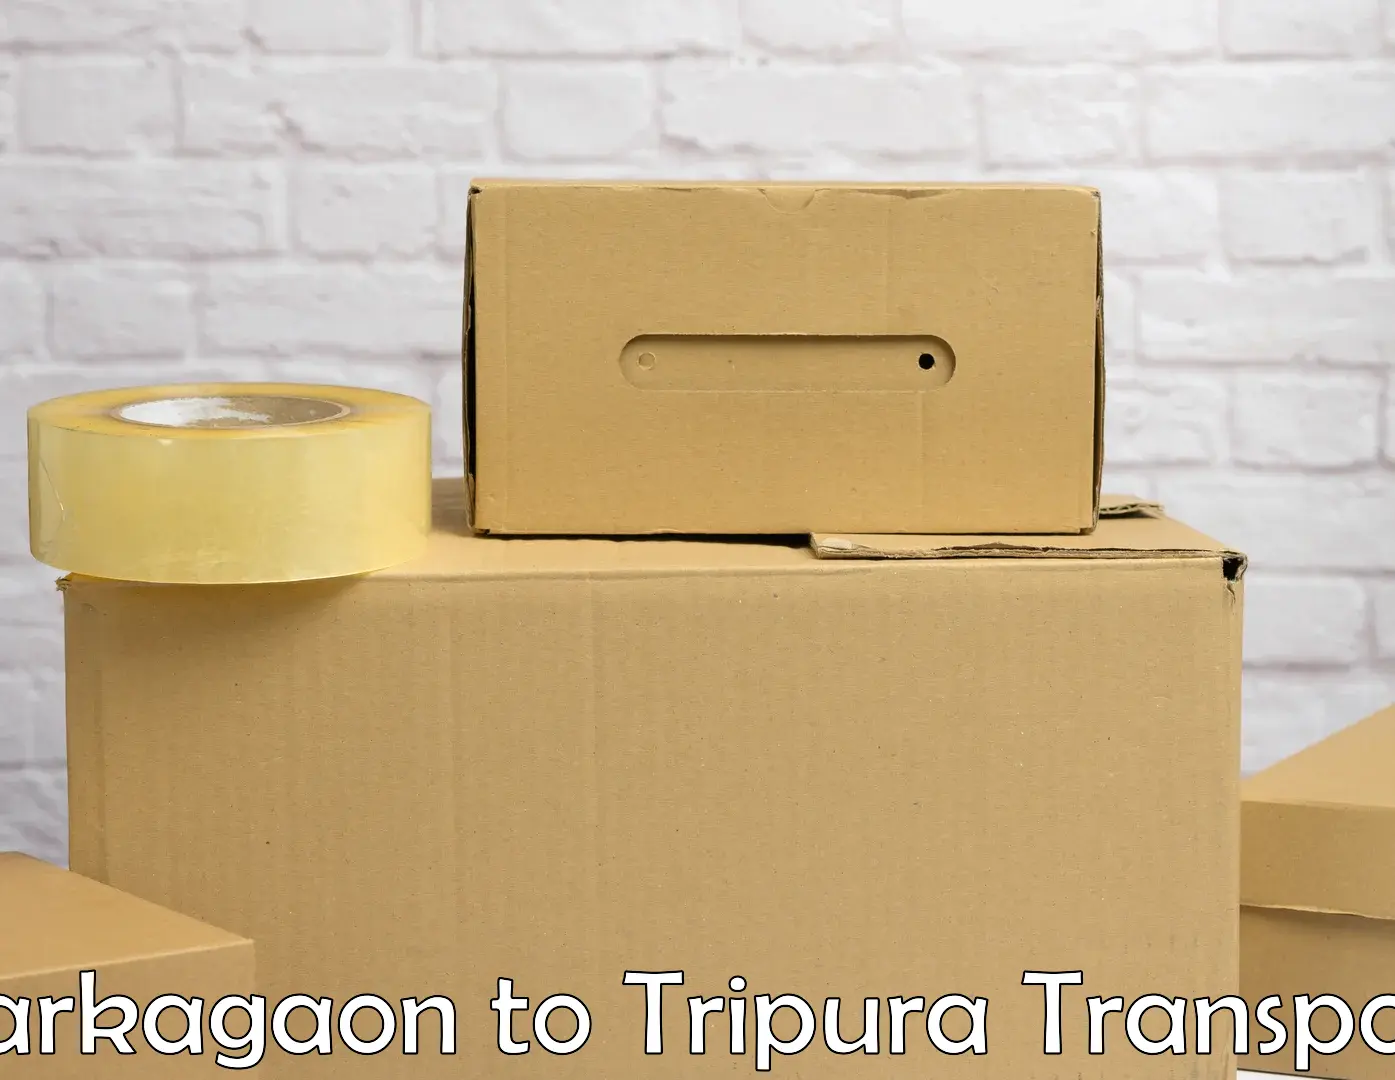 Nearest transport service Barkagaon to IIIT Agartala